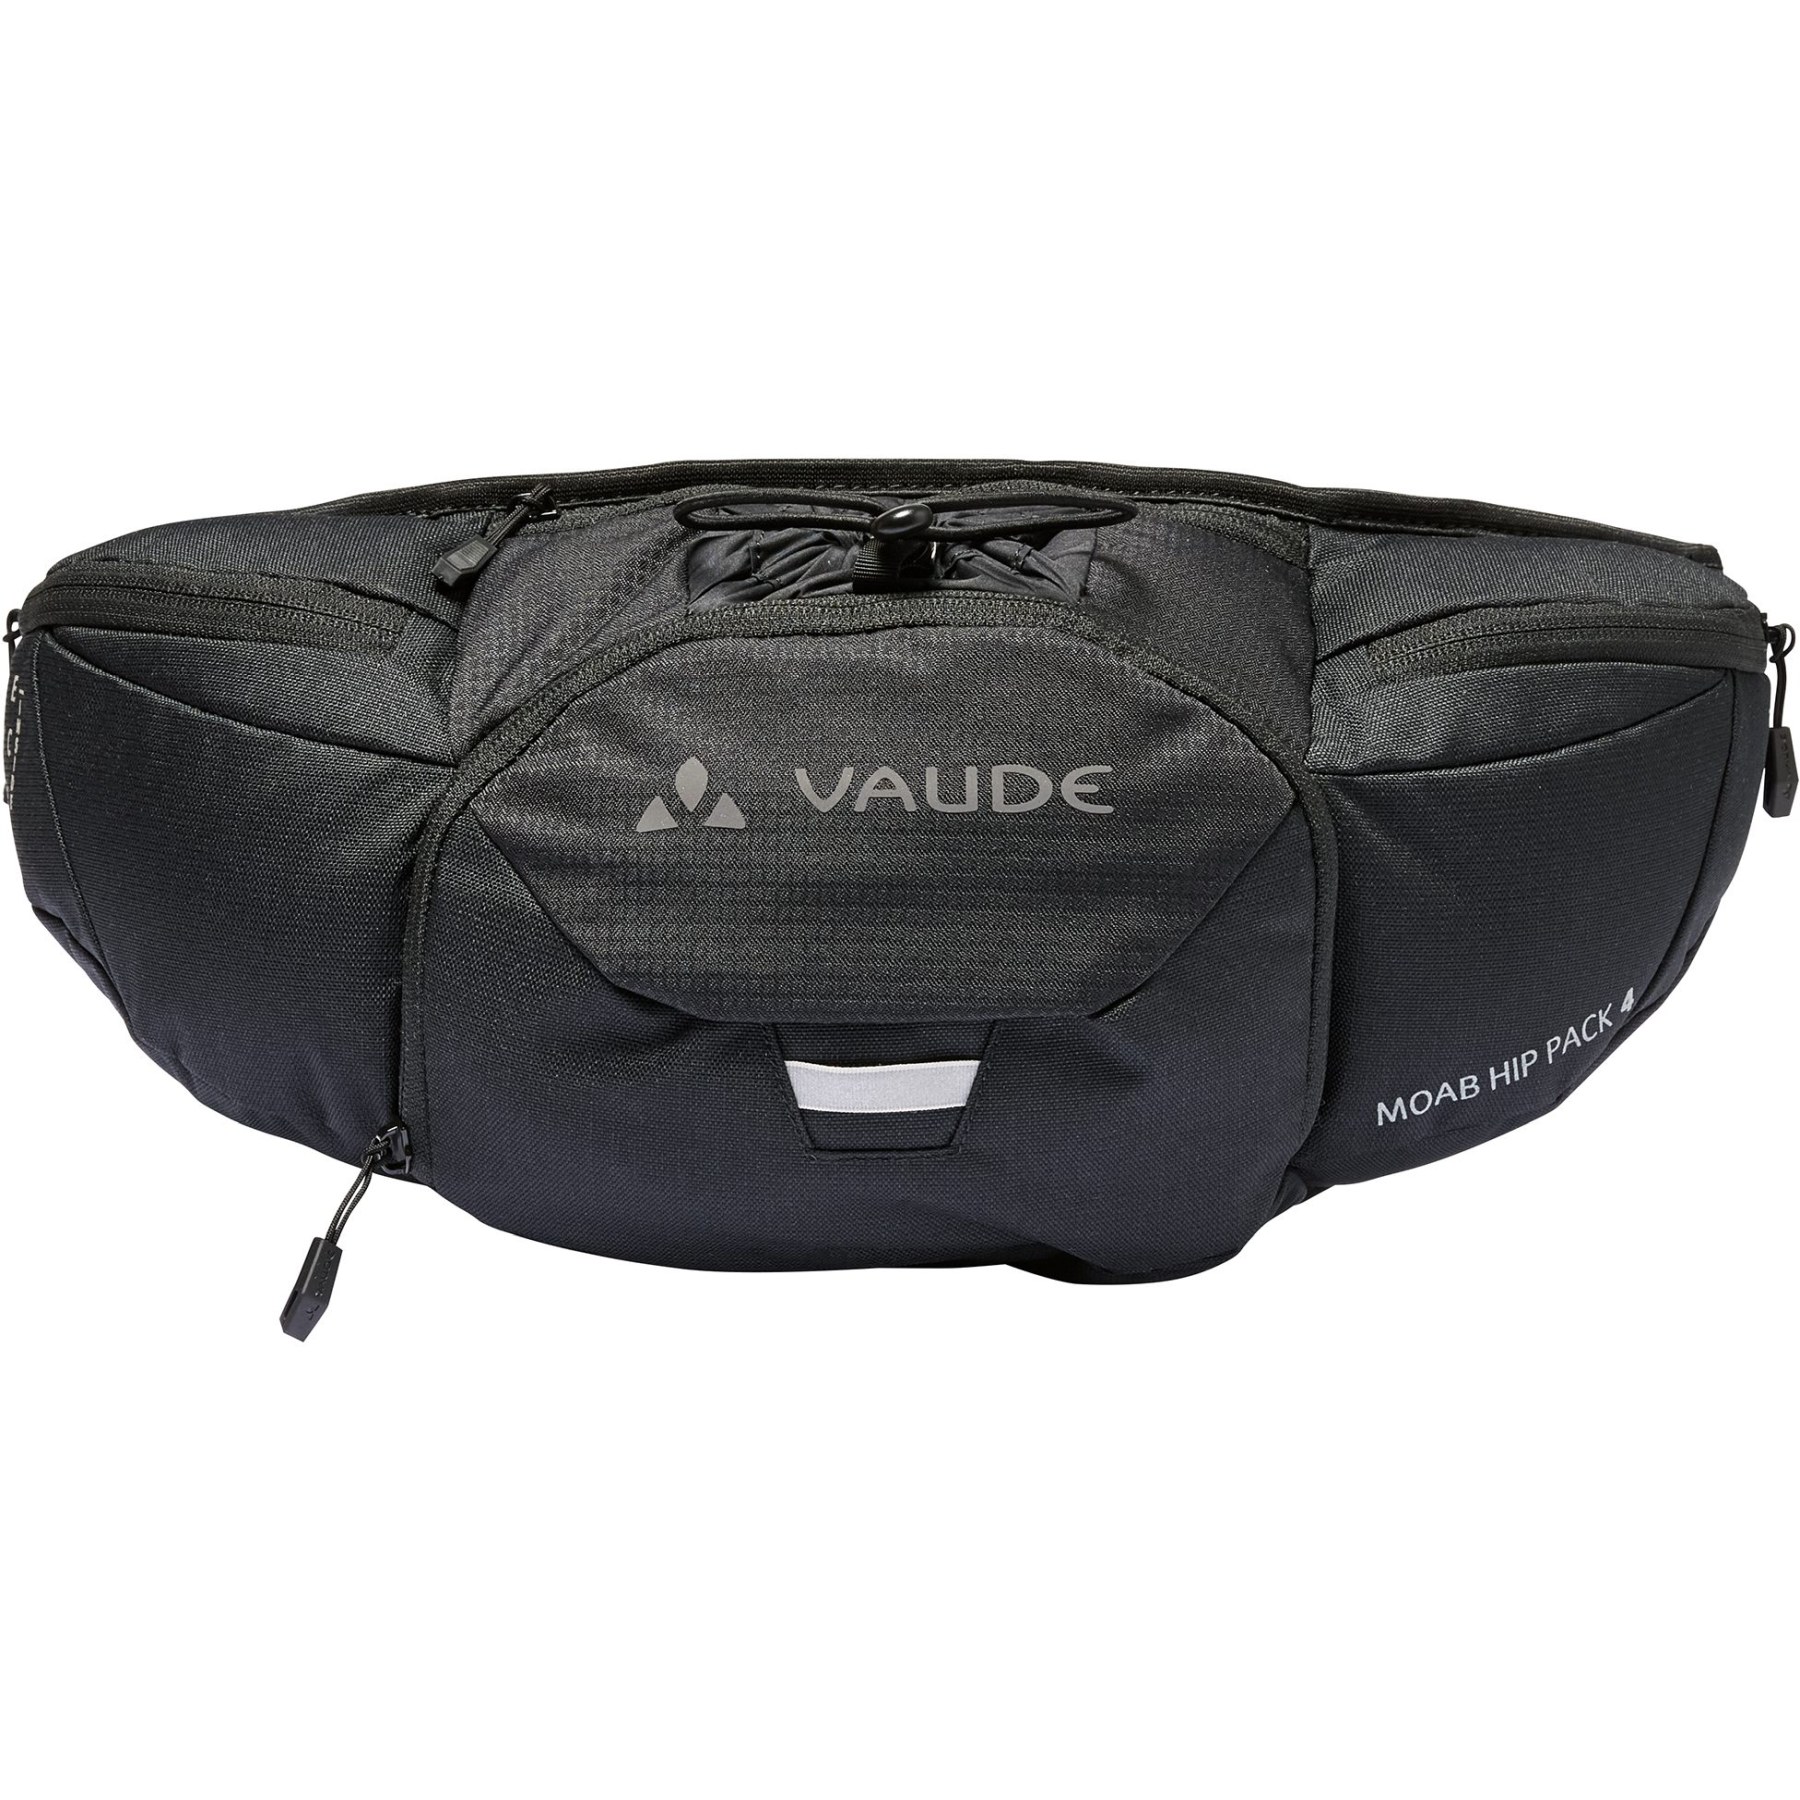 Produktbild von Vaude Moab Hüfttasche 4L - schwarz